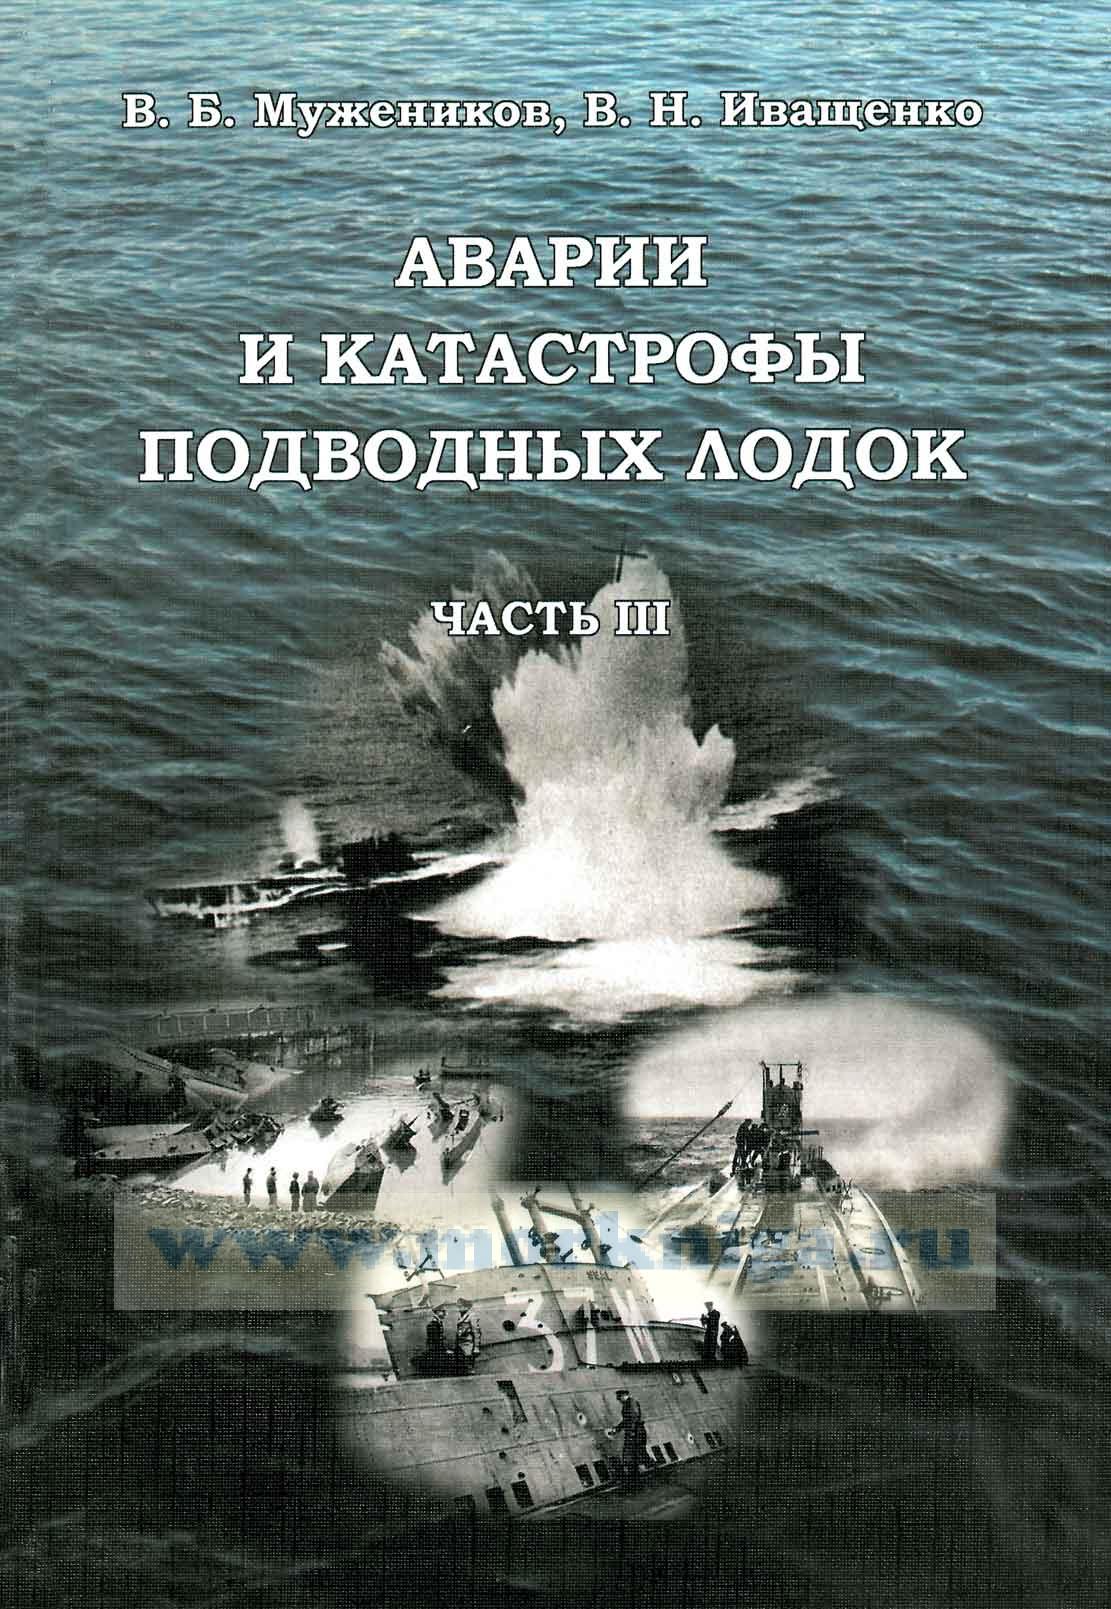 Аварии и катастрофы подводных лодок. Часть III